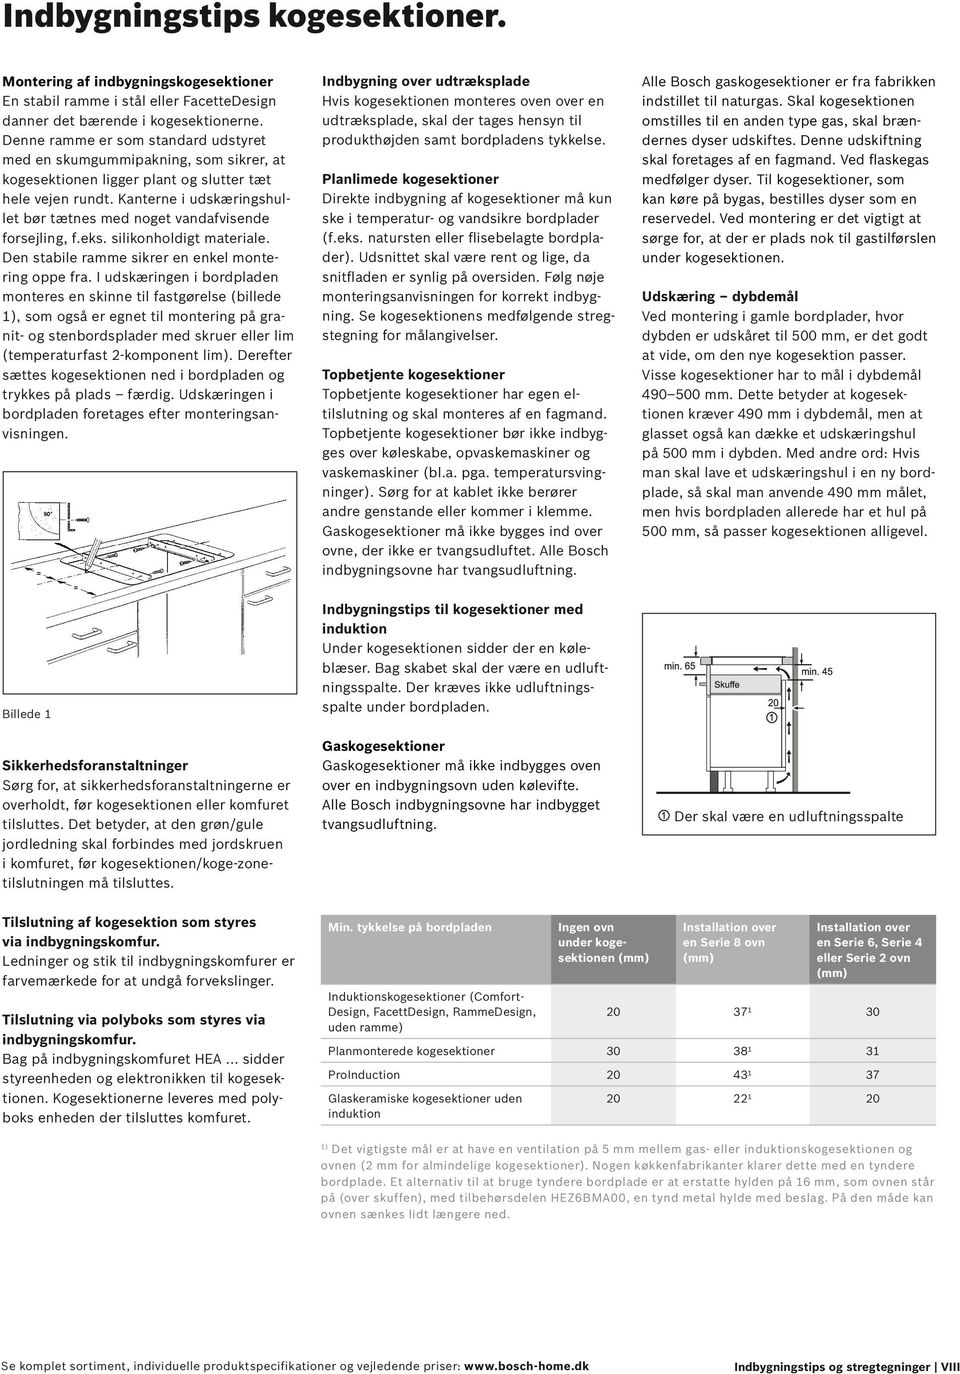 Bosch indbygningstips Gældende fra 1. april PDF Free Download